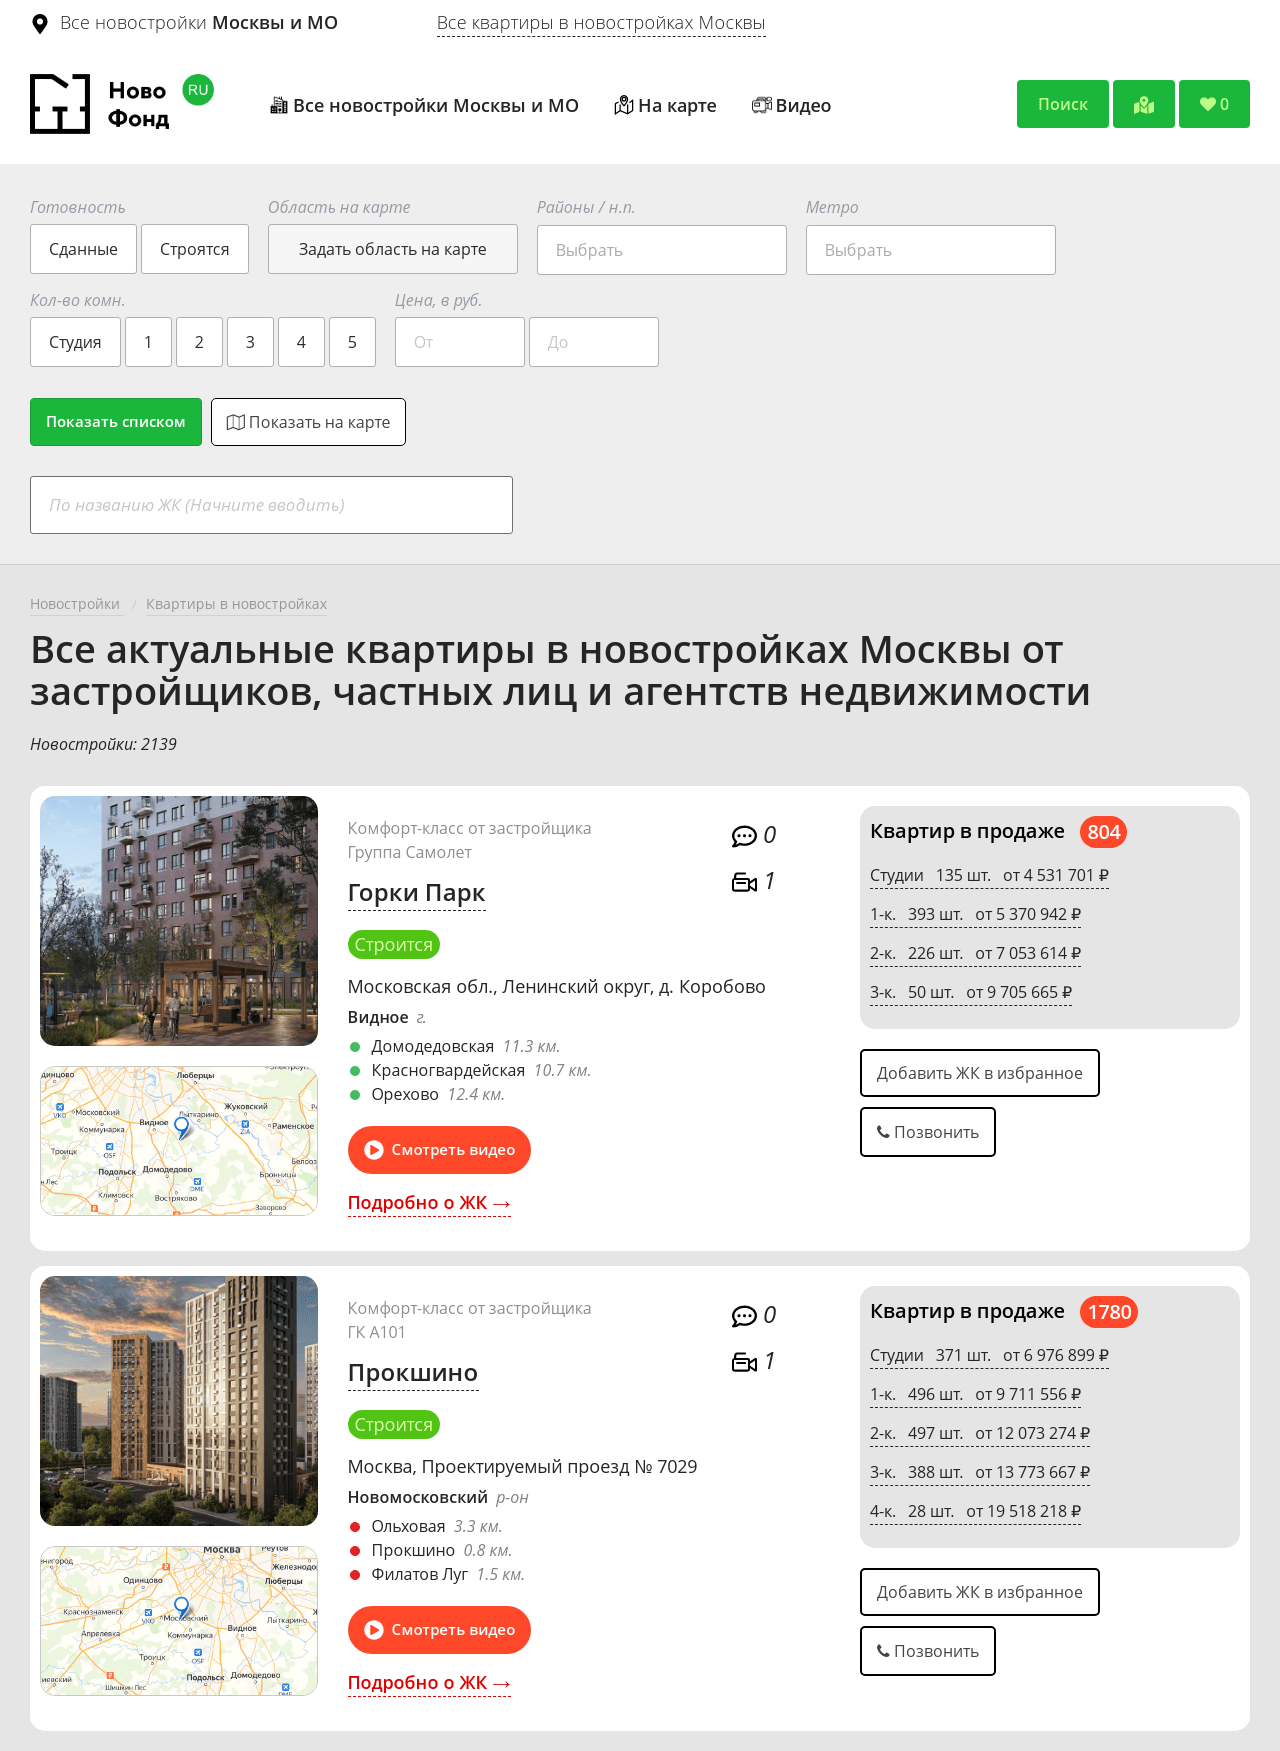 Портал новостроек Москвы